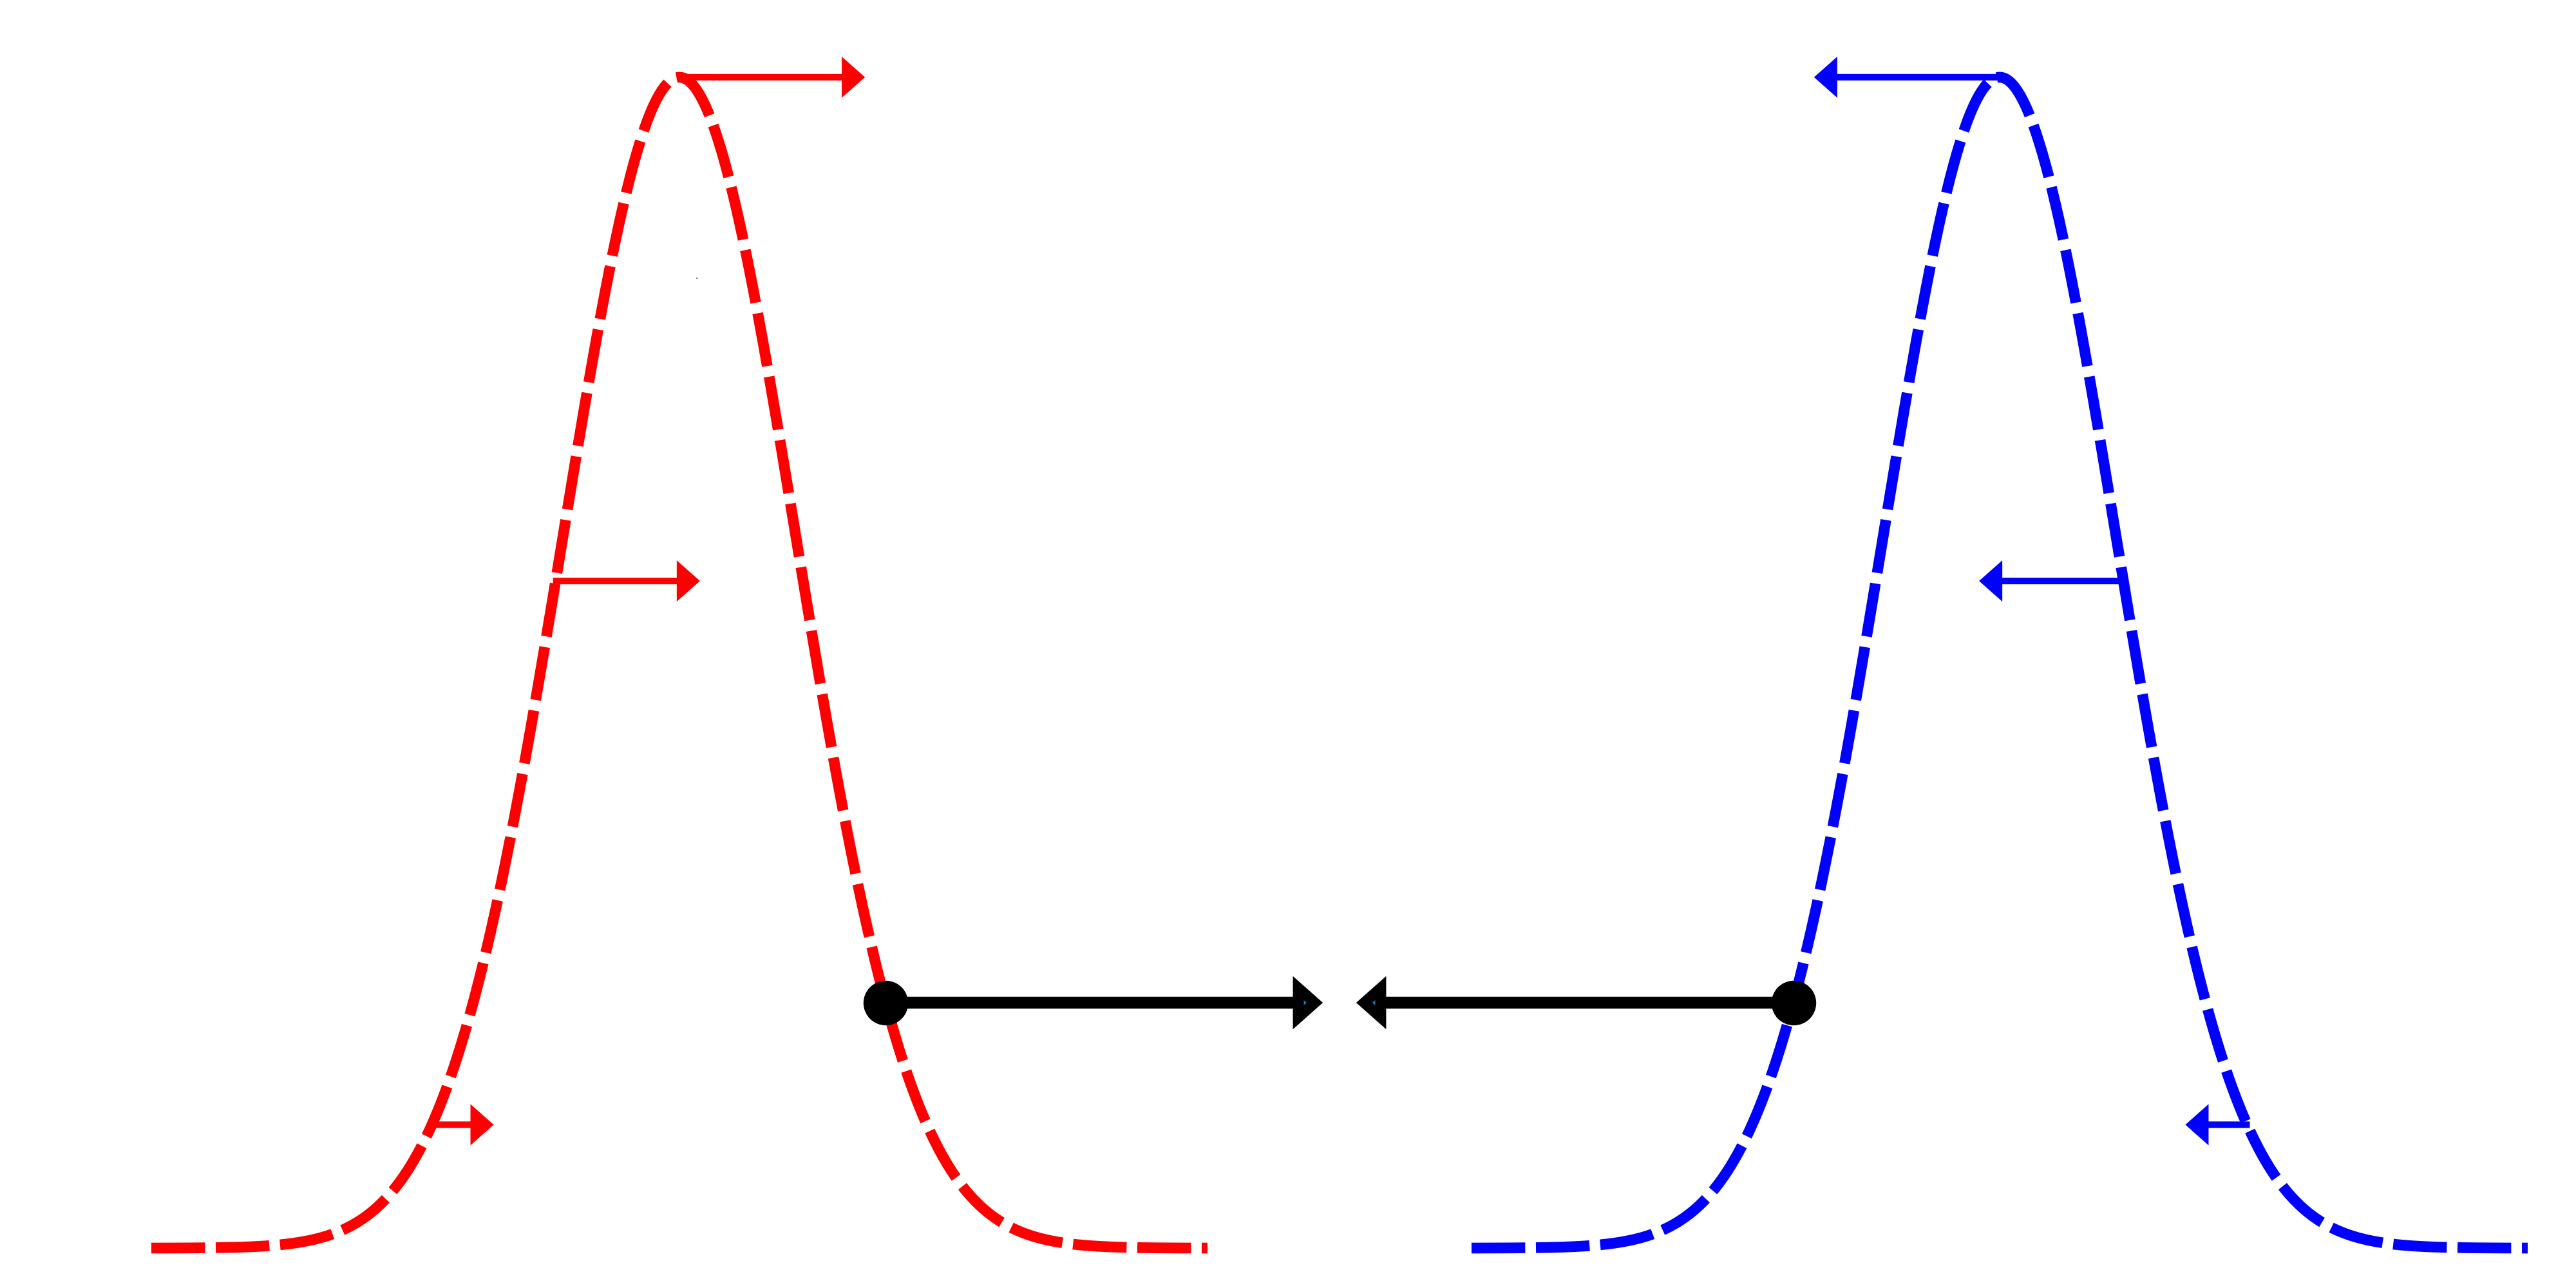 Folyamatos-változó összefonódás központi erőn keresztül: alkalmazása a gravitációra kvantumtömegek között